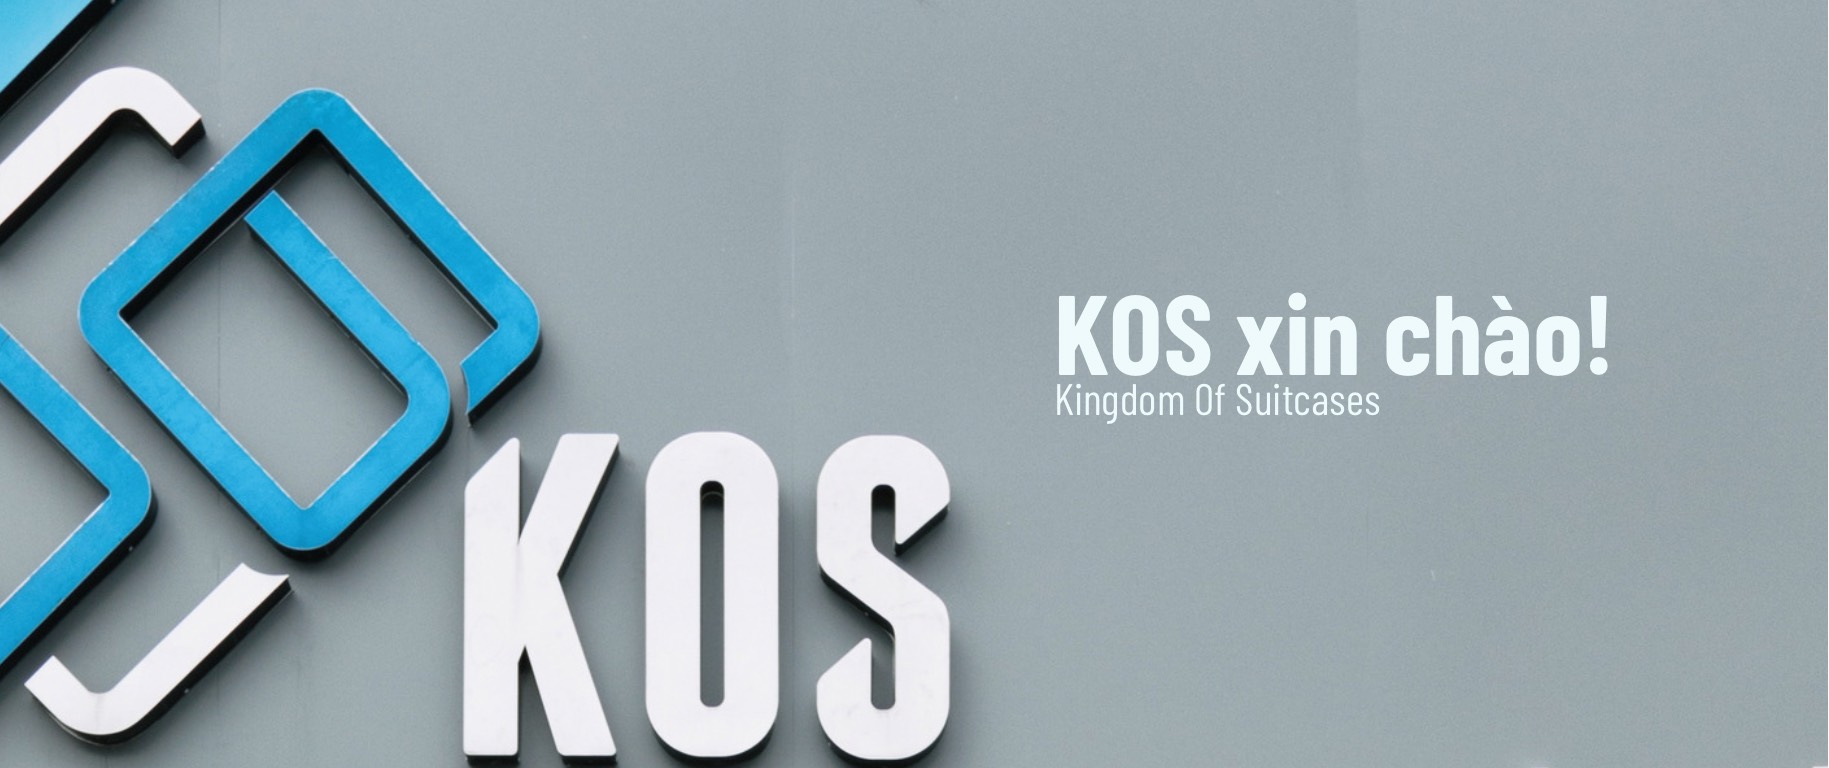 KOS - Shop chuyên cung cấp các dòng balo chống nước cao cấp